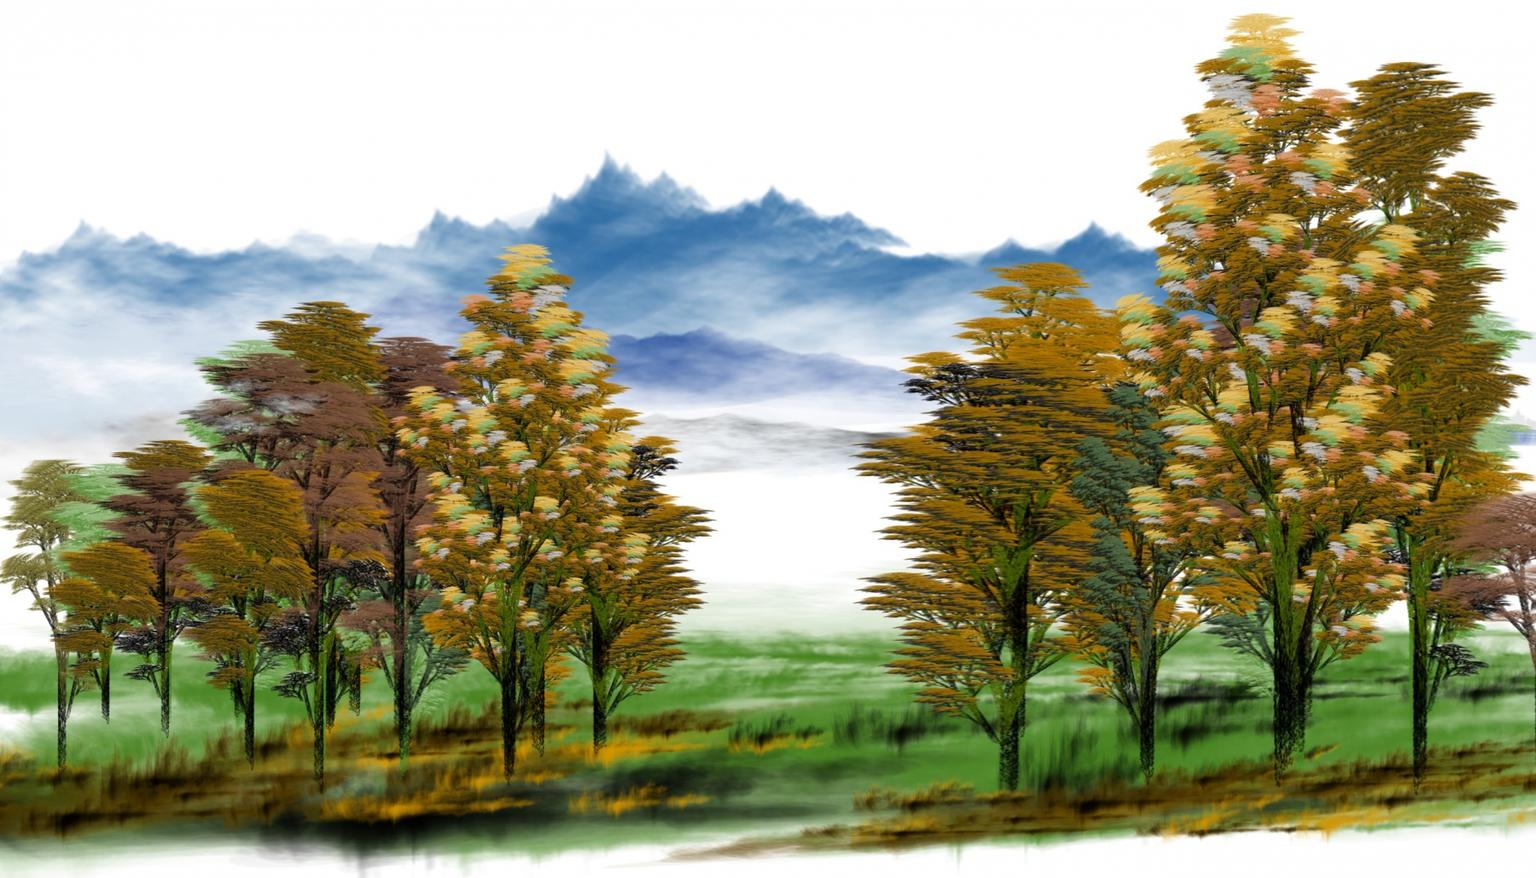 Image for entry 'Landscape'